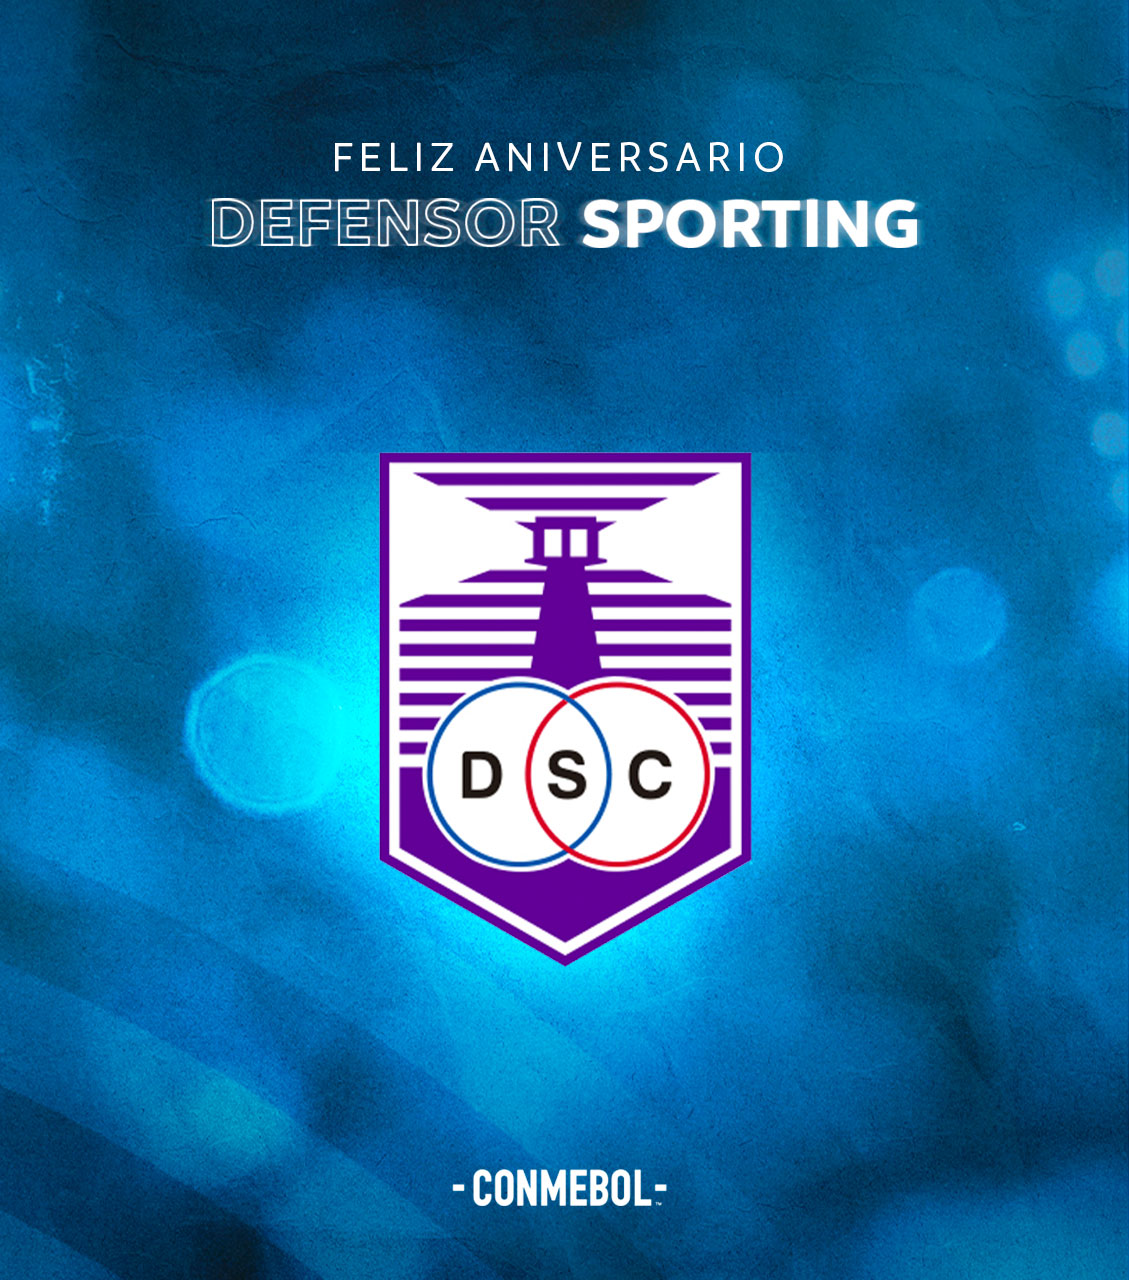  Defensor Sporting: 109 anos